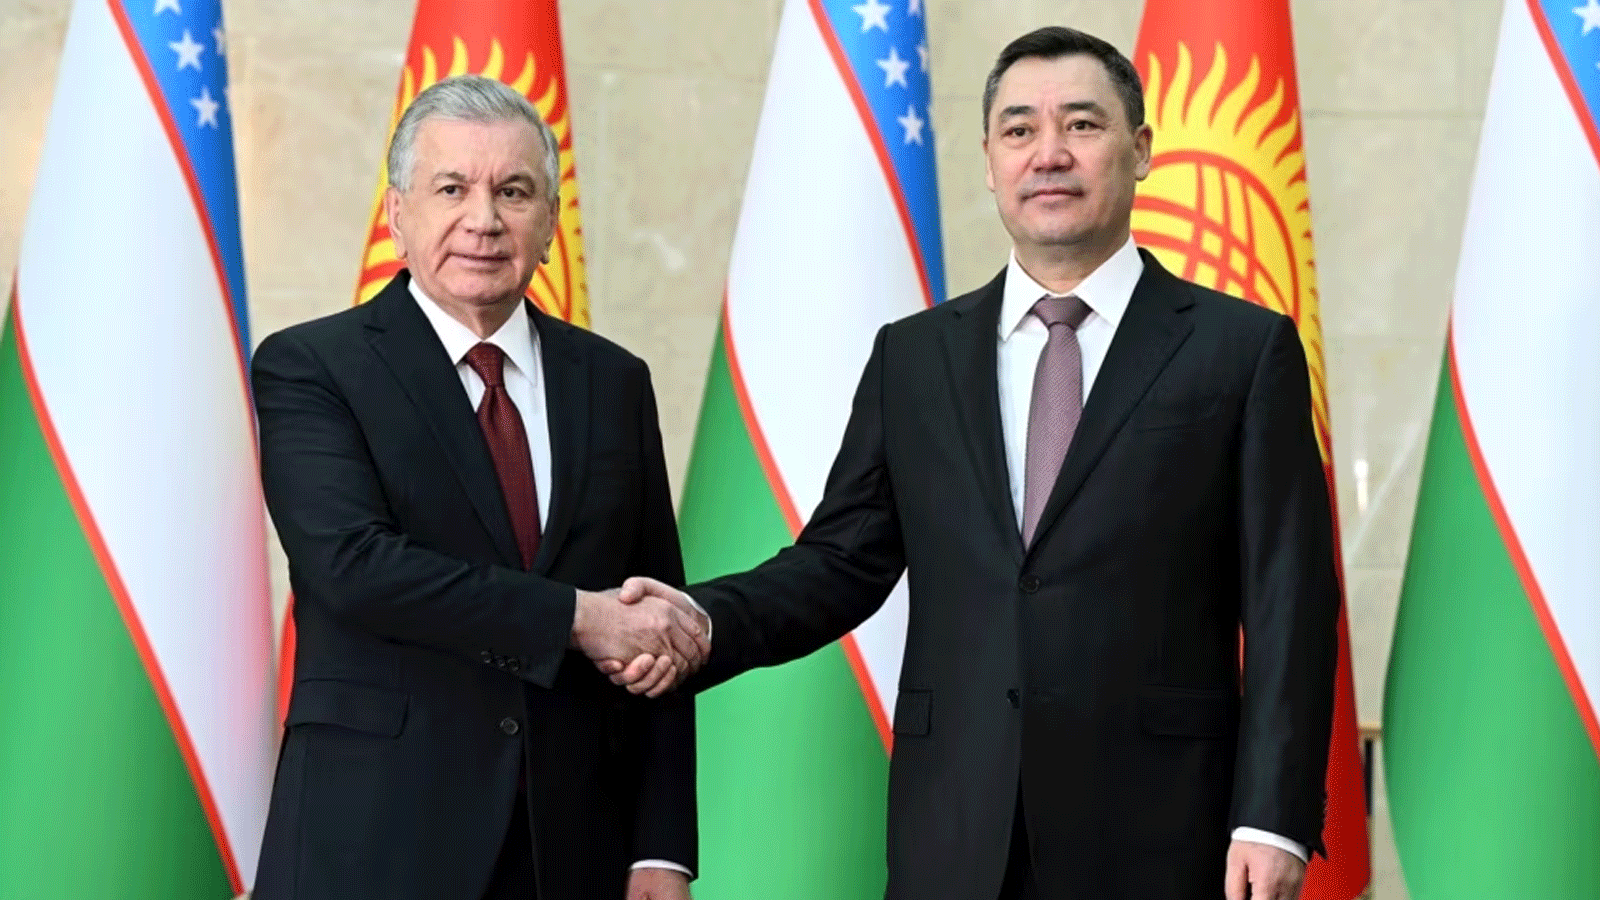 الرئيسان الأوزبكي شوكت ميرزيوييف والرئيس القرغيزي صدير جاباروف وقعا أكثر من 20 وثيقة ثنائية في 27 كانون الثاني\يناير 2023